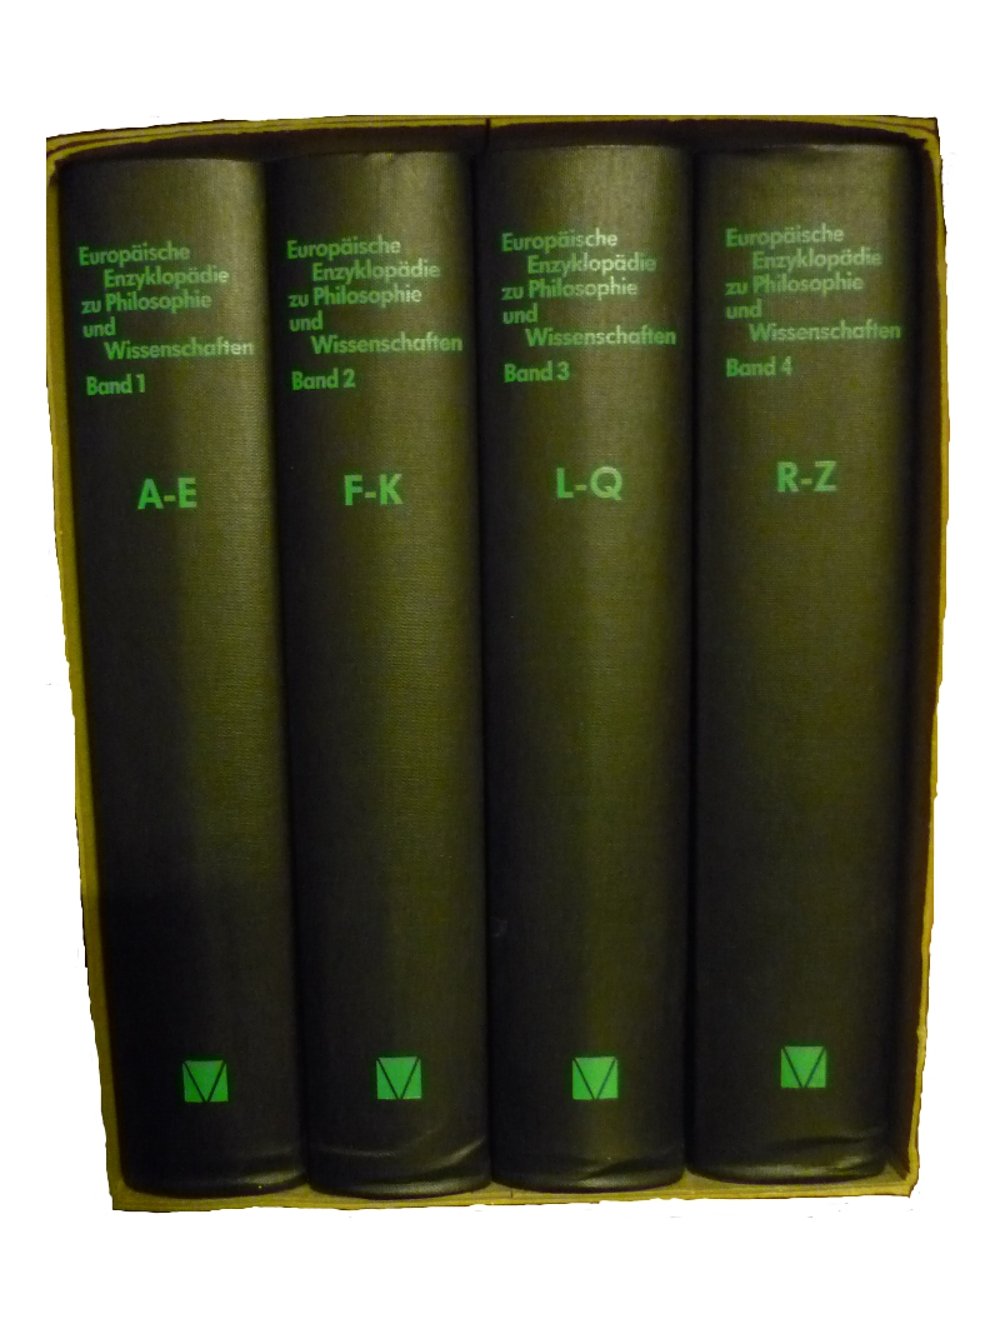 Imagen de portada del libro Europäische Enzyklopädie zu Philosophie und Wissenschaften